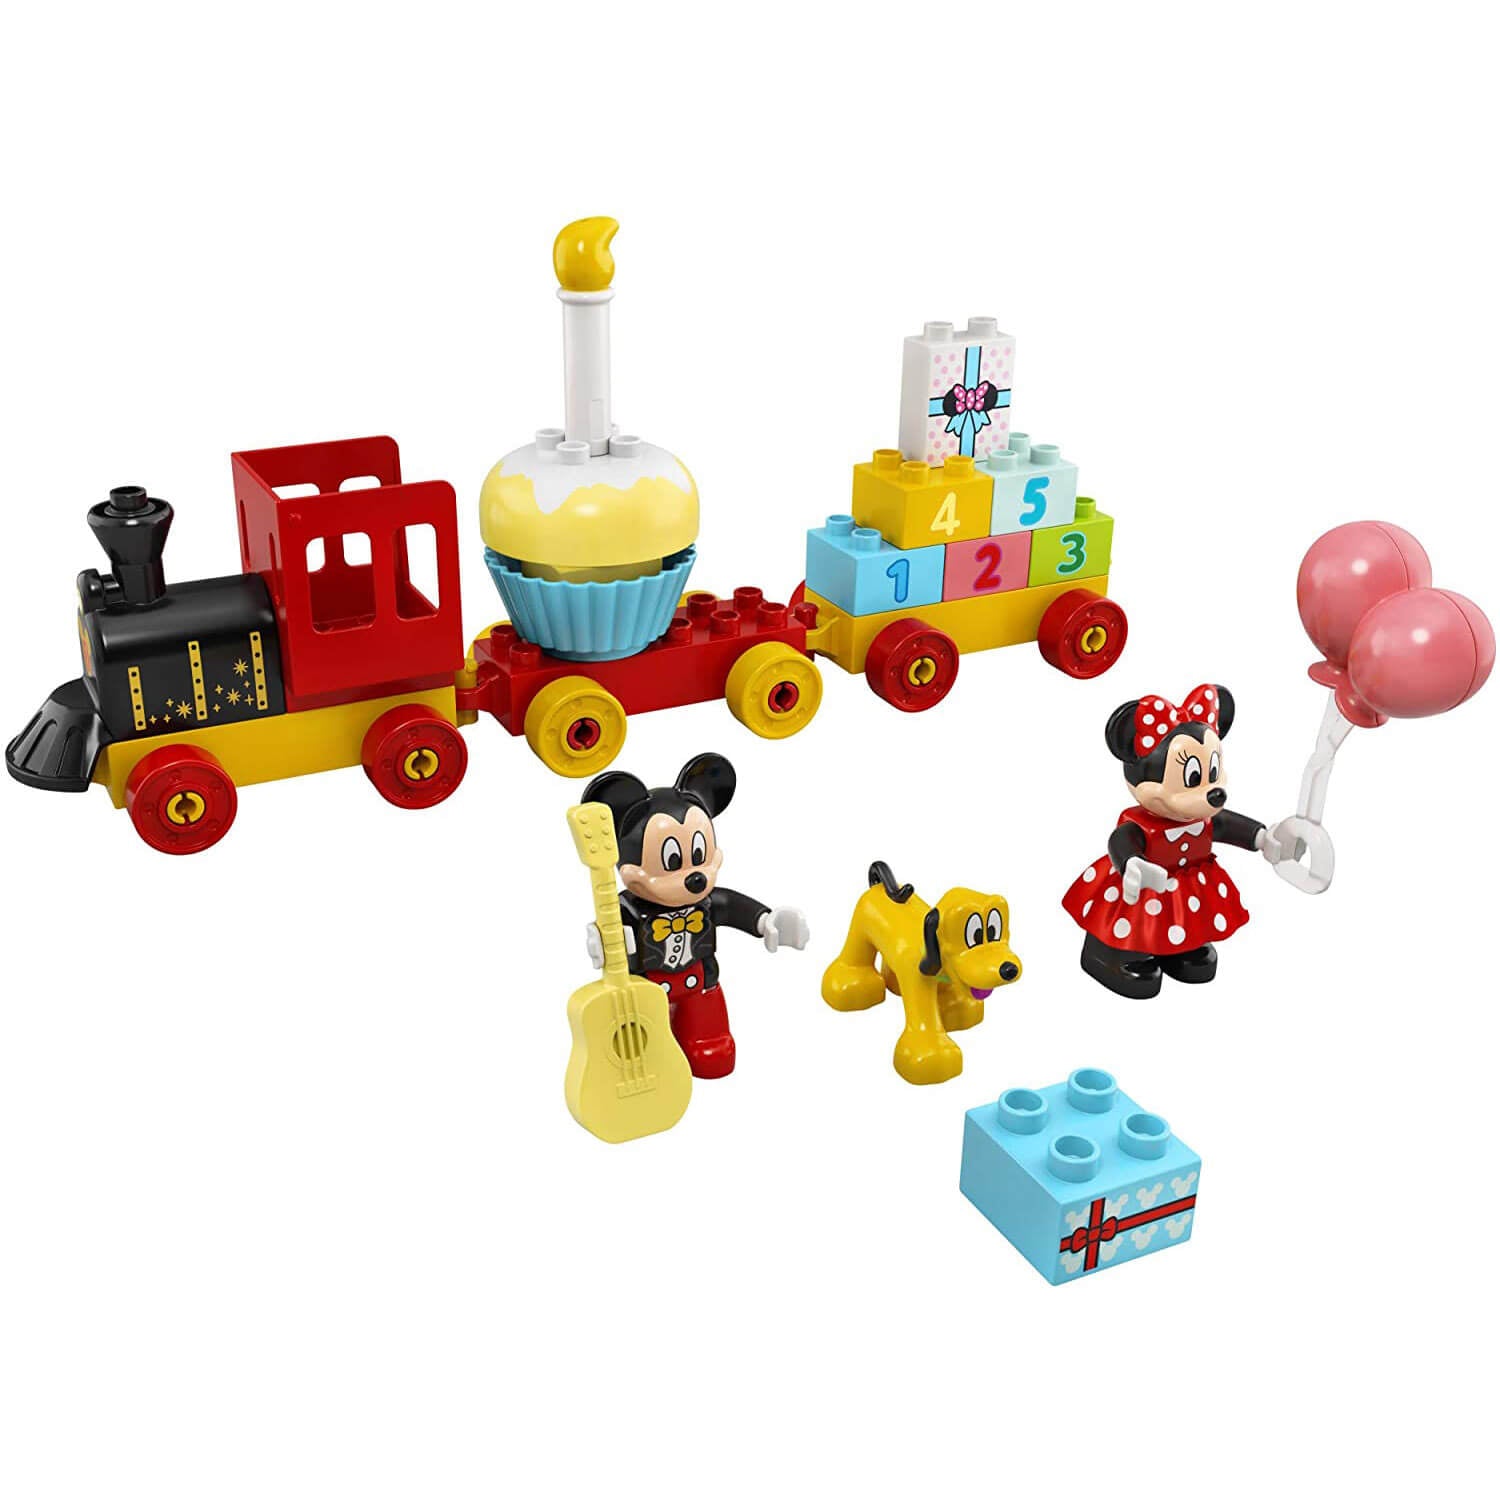 LEGO DUPLO Disney Mickey & Minnie Birthday Train 22 Piece Building Set (10941)